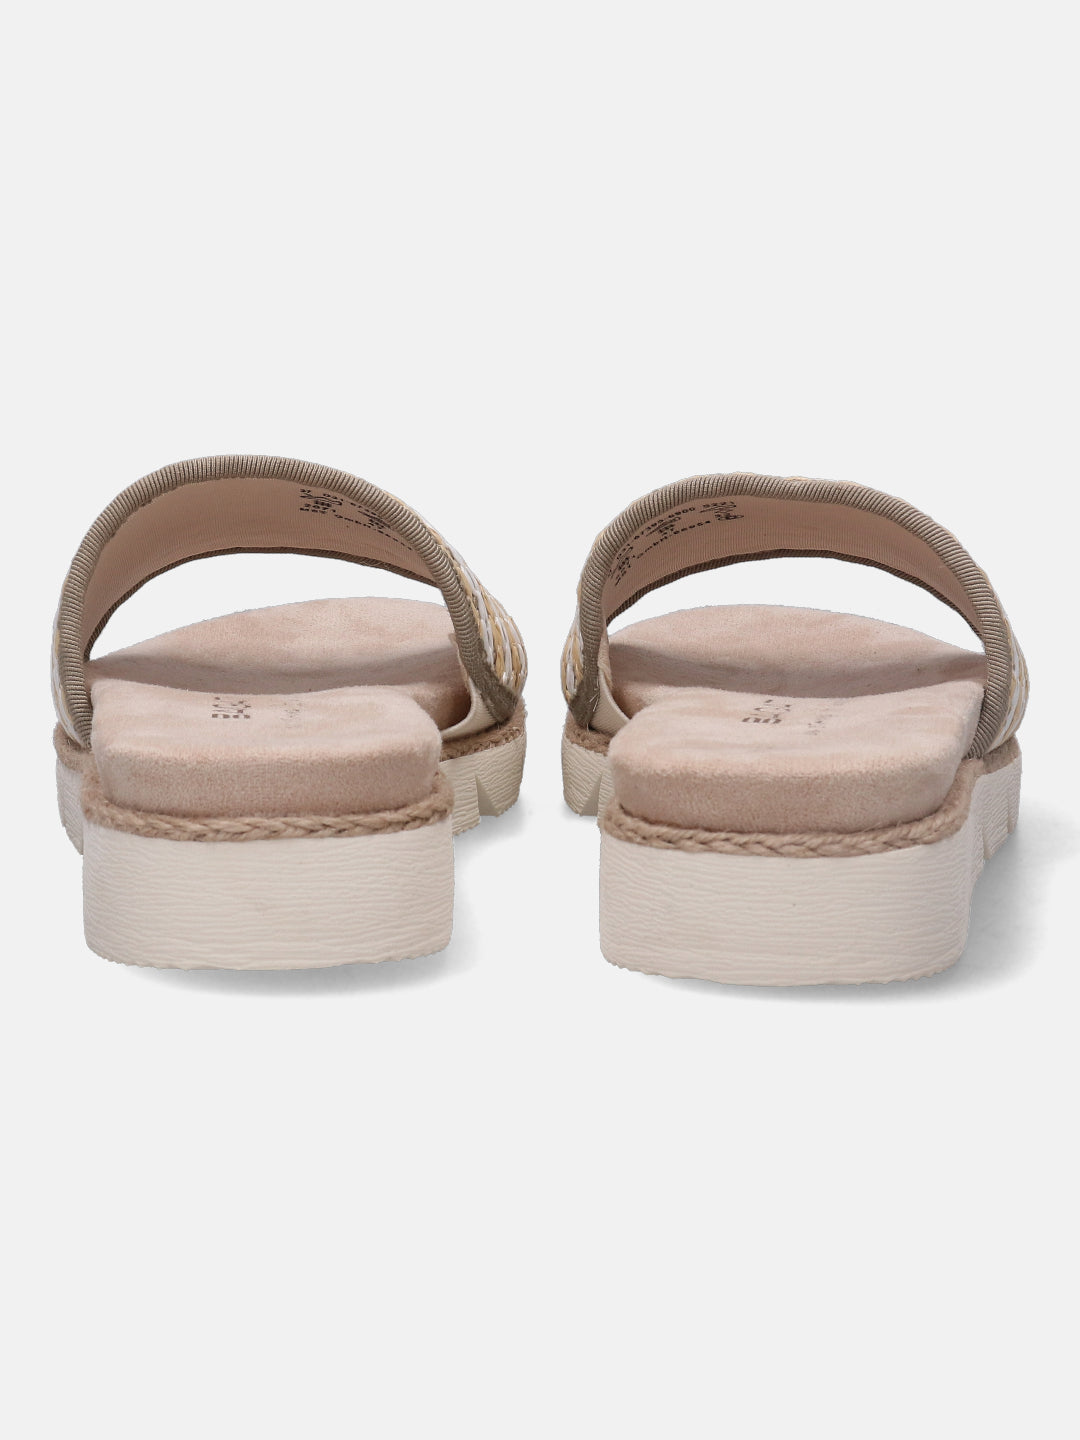 Kiko Beige & Olive Flatform Sandals - BAGATT